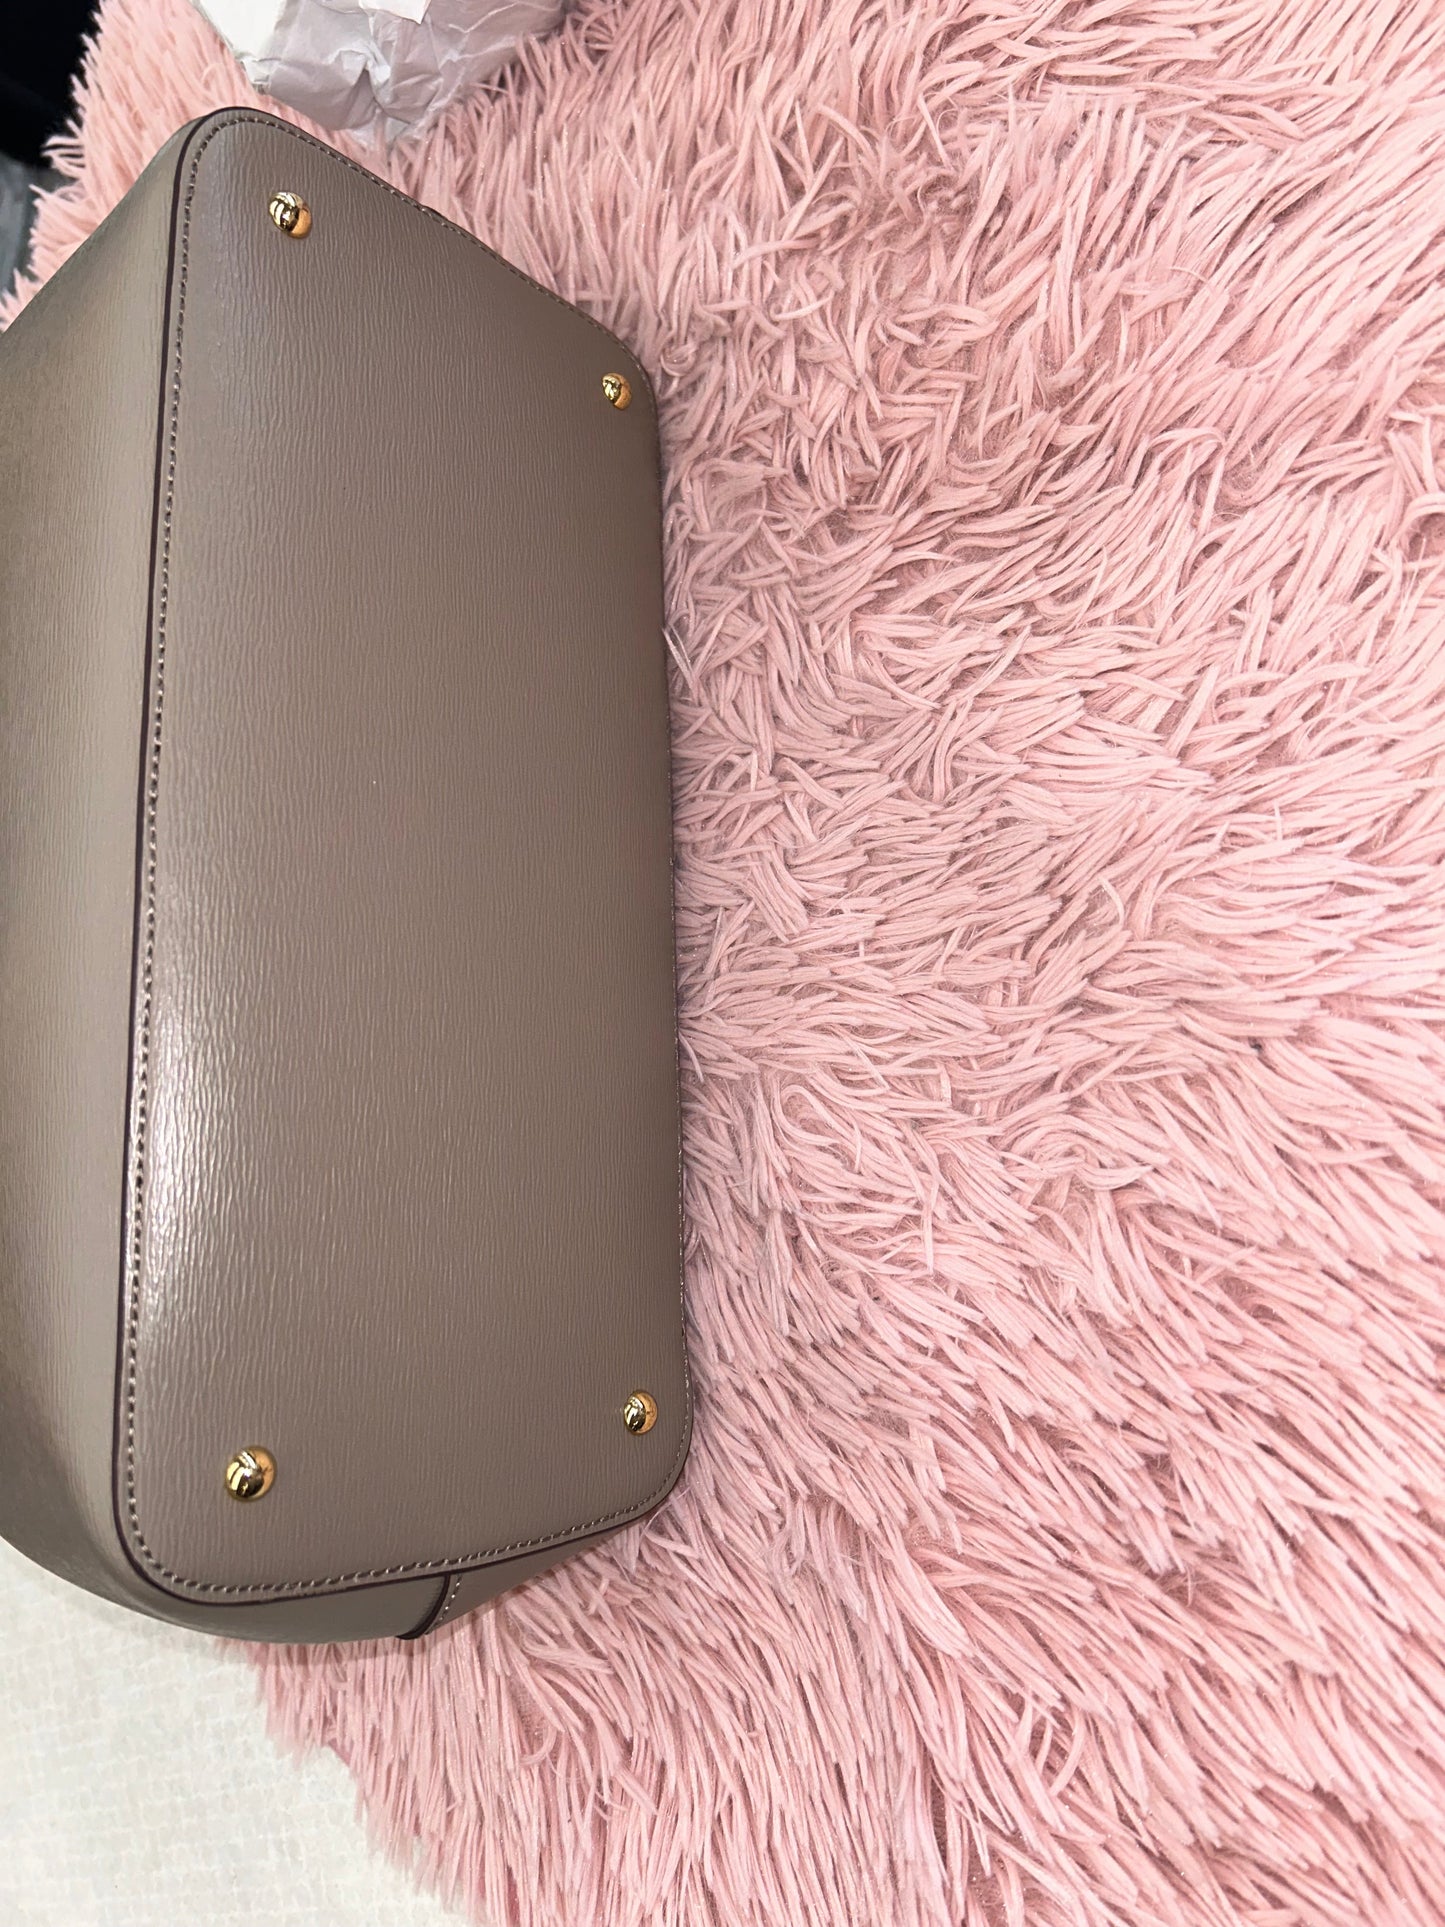 Handbag Lauren By Ralph Lauren, Size Medium